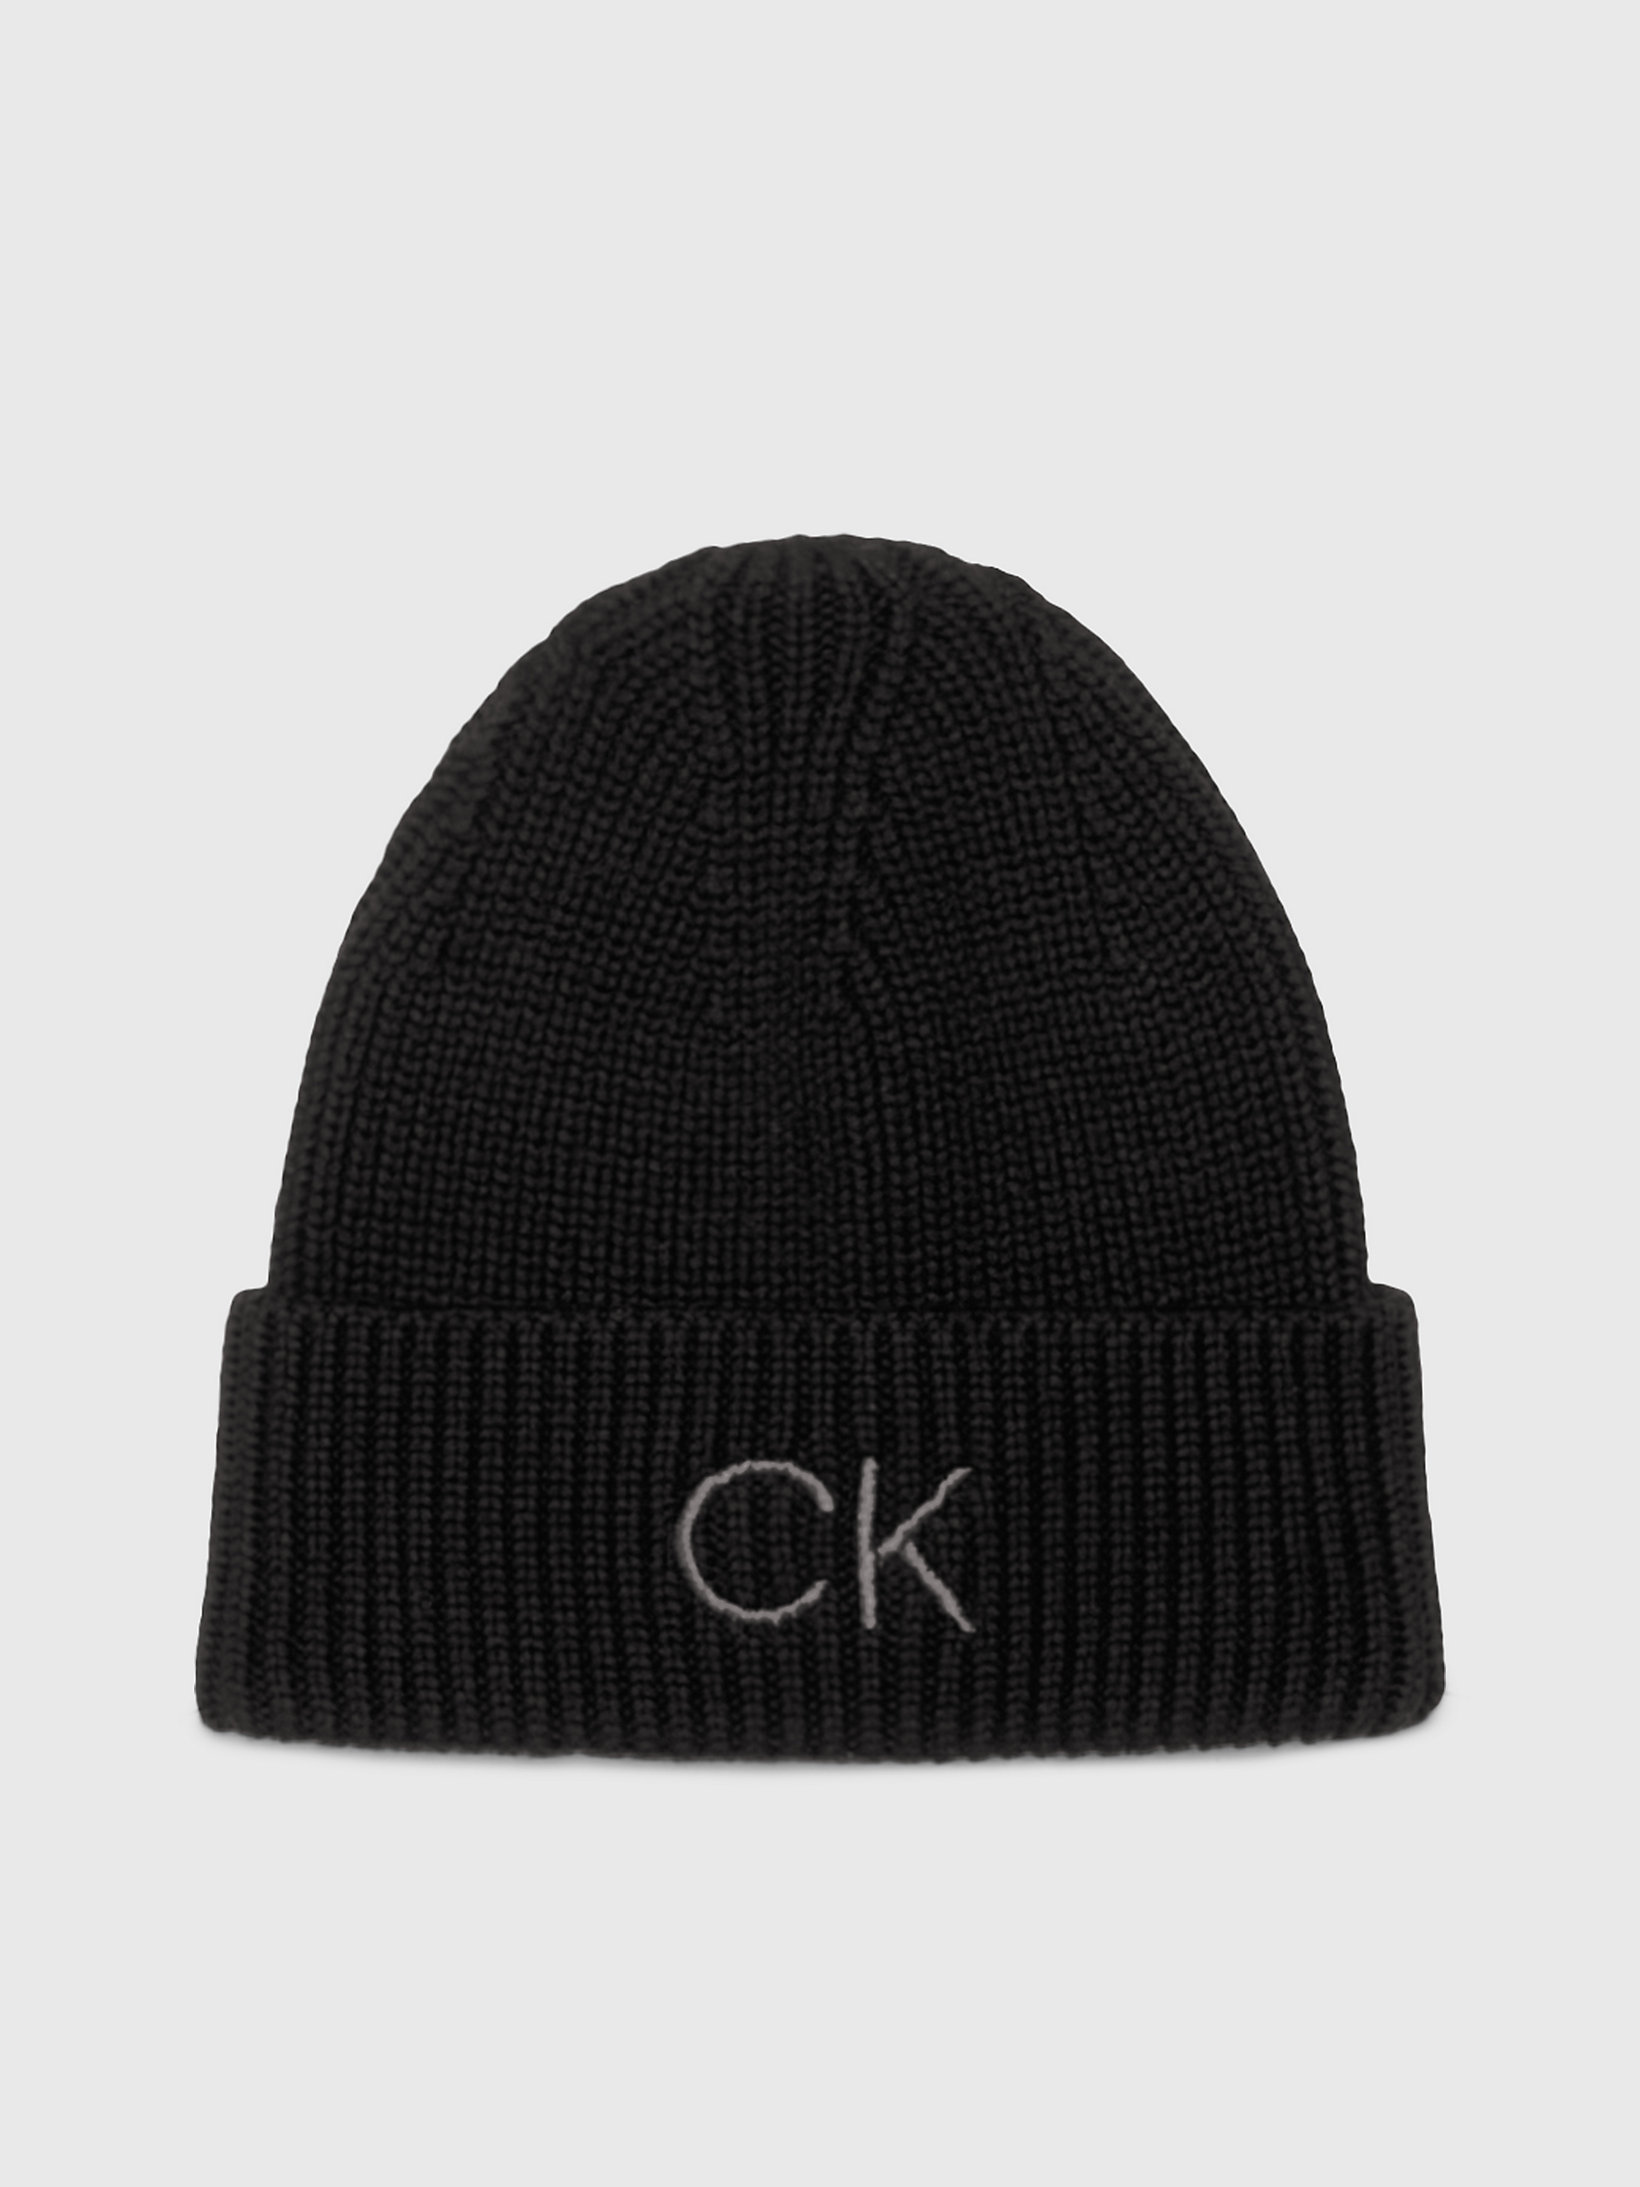 CK Black Organic Cotton Blend Beanie undefined women Calvin Klein